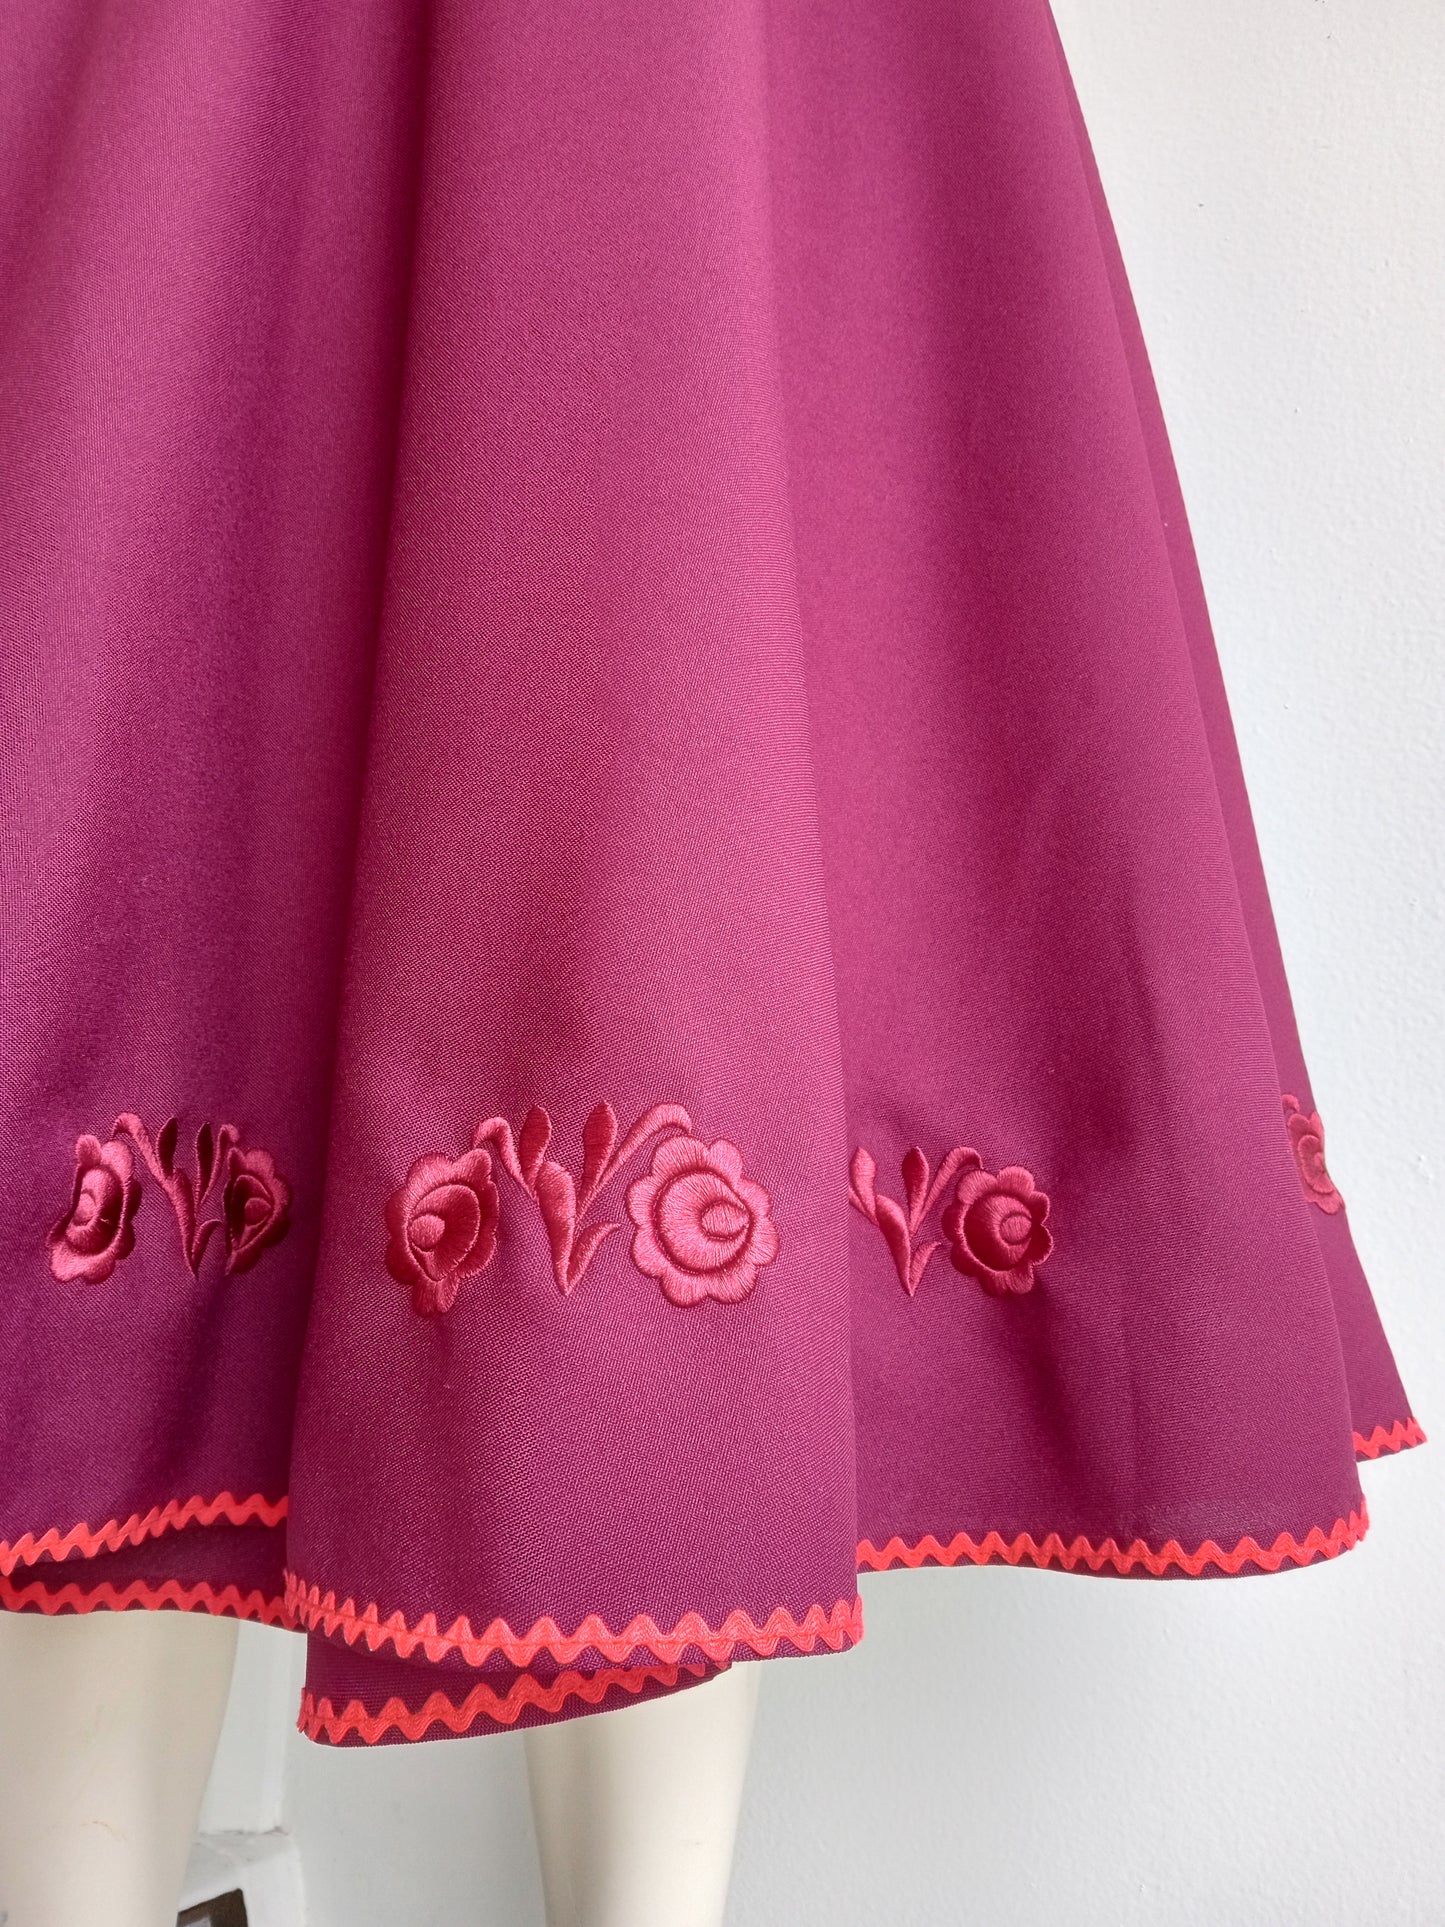 Embroidered Matyo Skirt